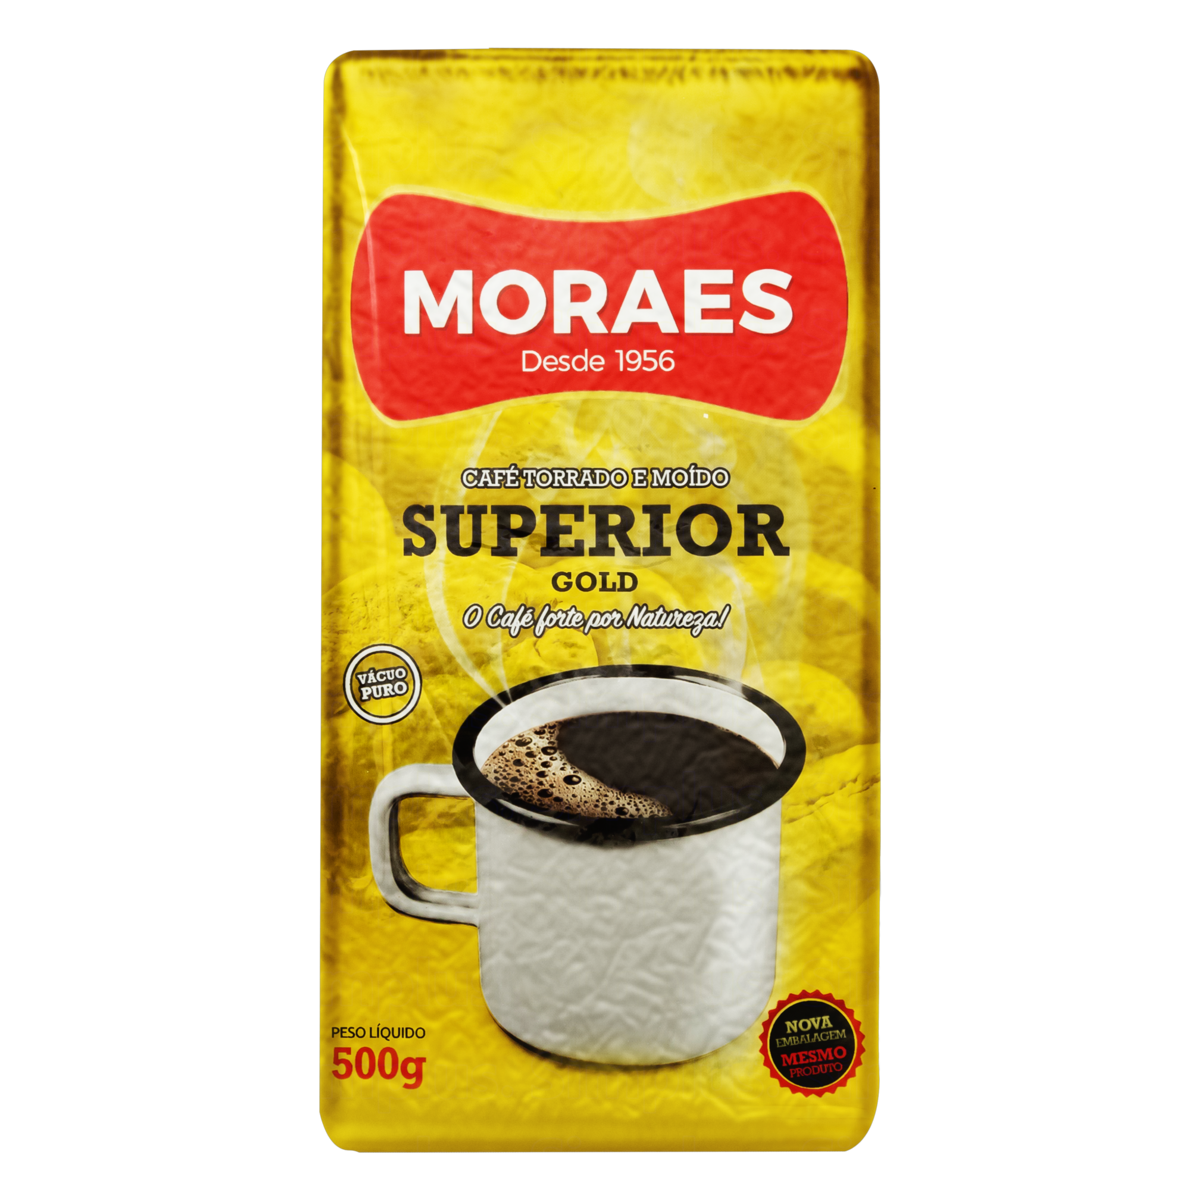 Café Torrado e Moído Moraes 250 g